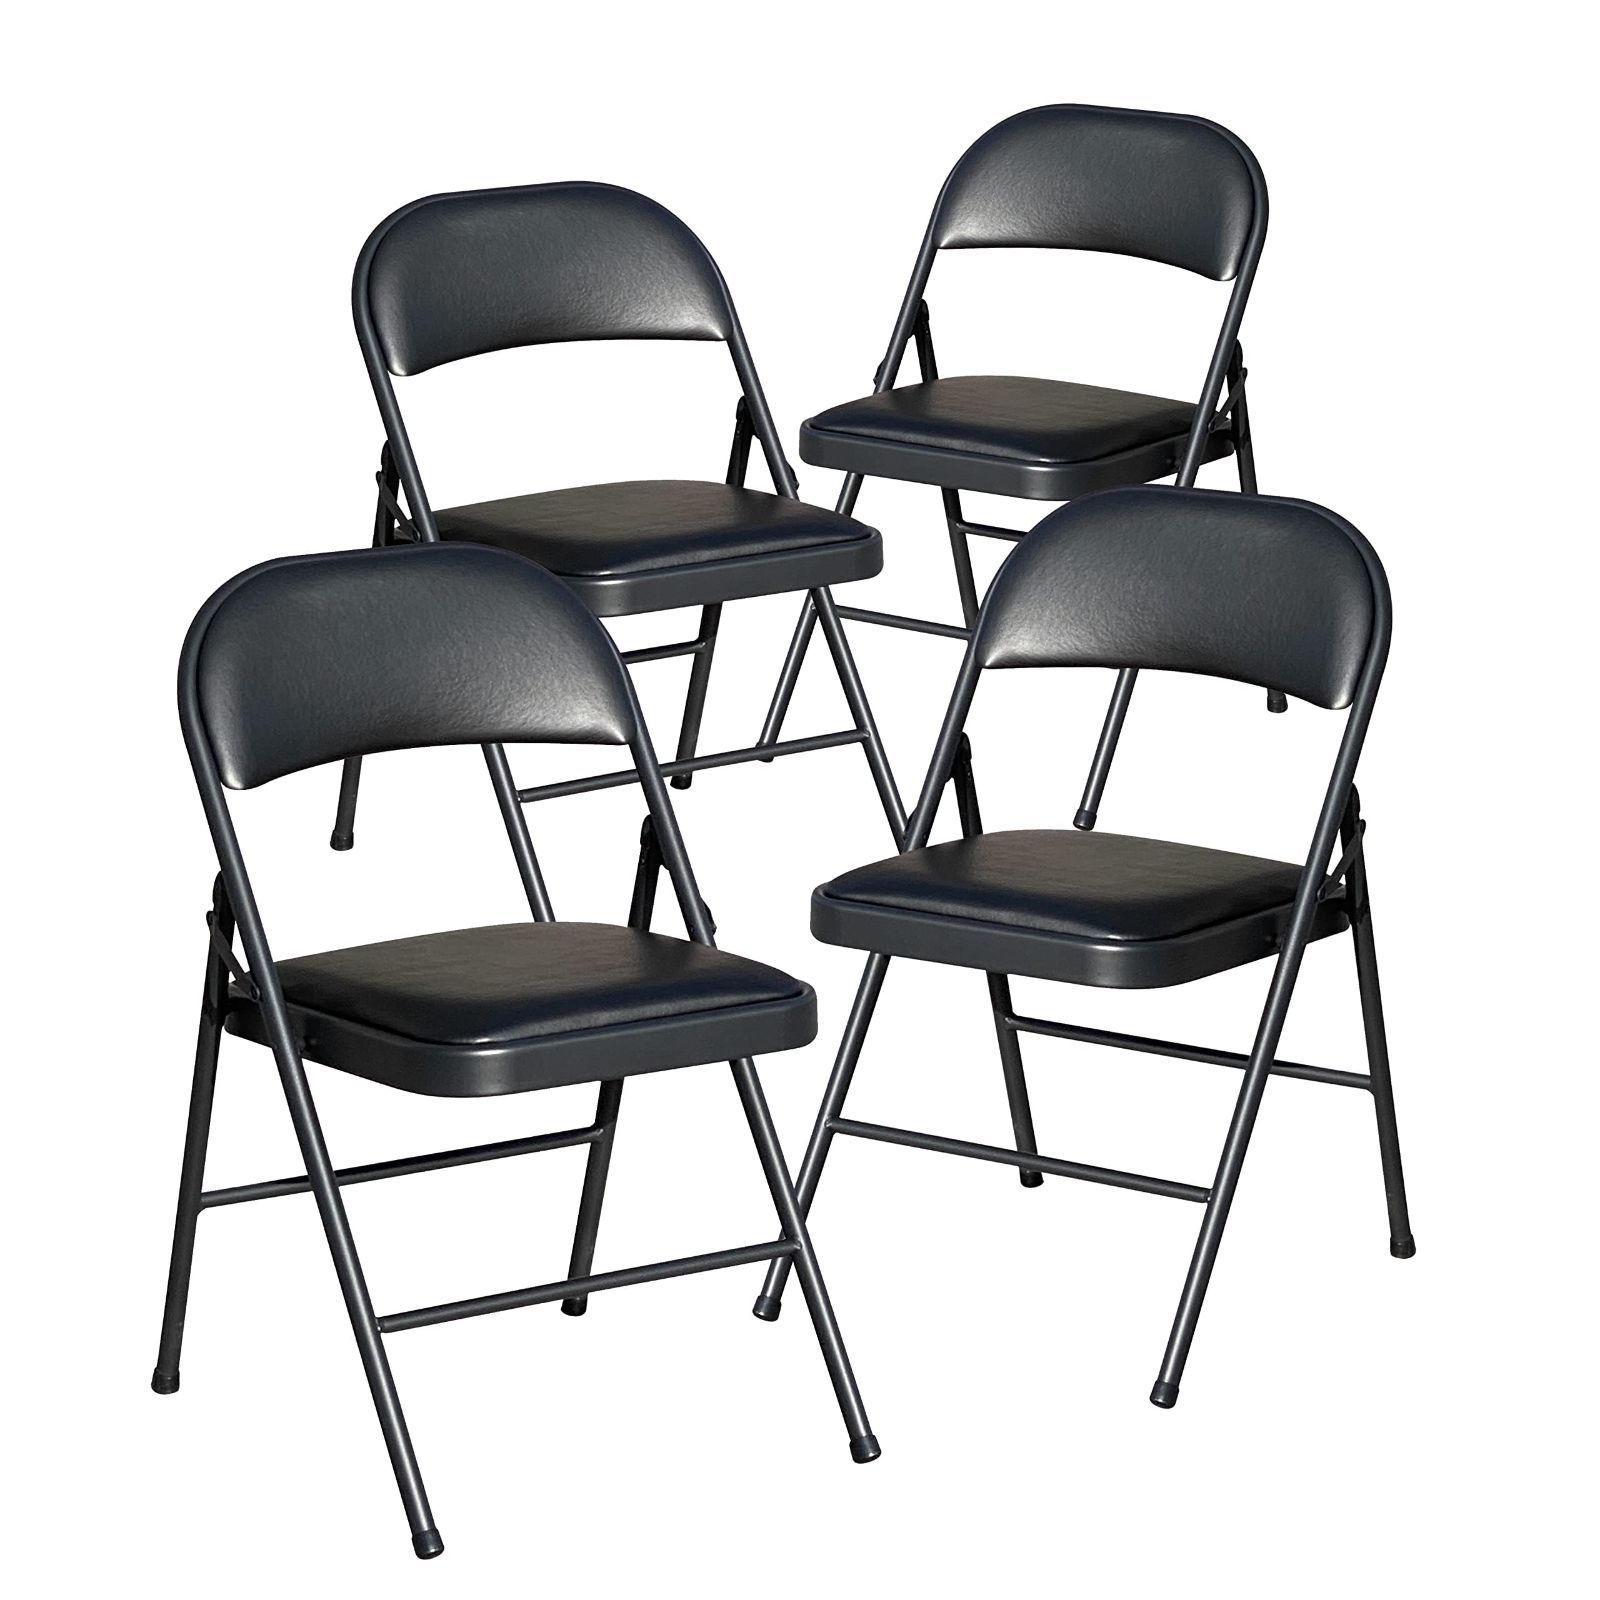 最安値安い送料無料 折りたたみ パイプ椅子 青 15脚セット 完成品 組立不要 粉体塗装 パイプイス ミーティングチェア 会議イス 会議椅子 事務椅子 パイプイス